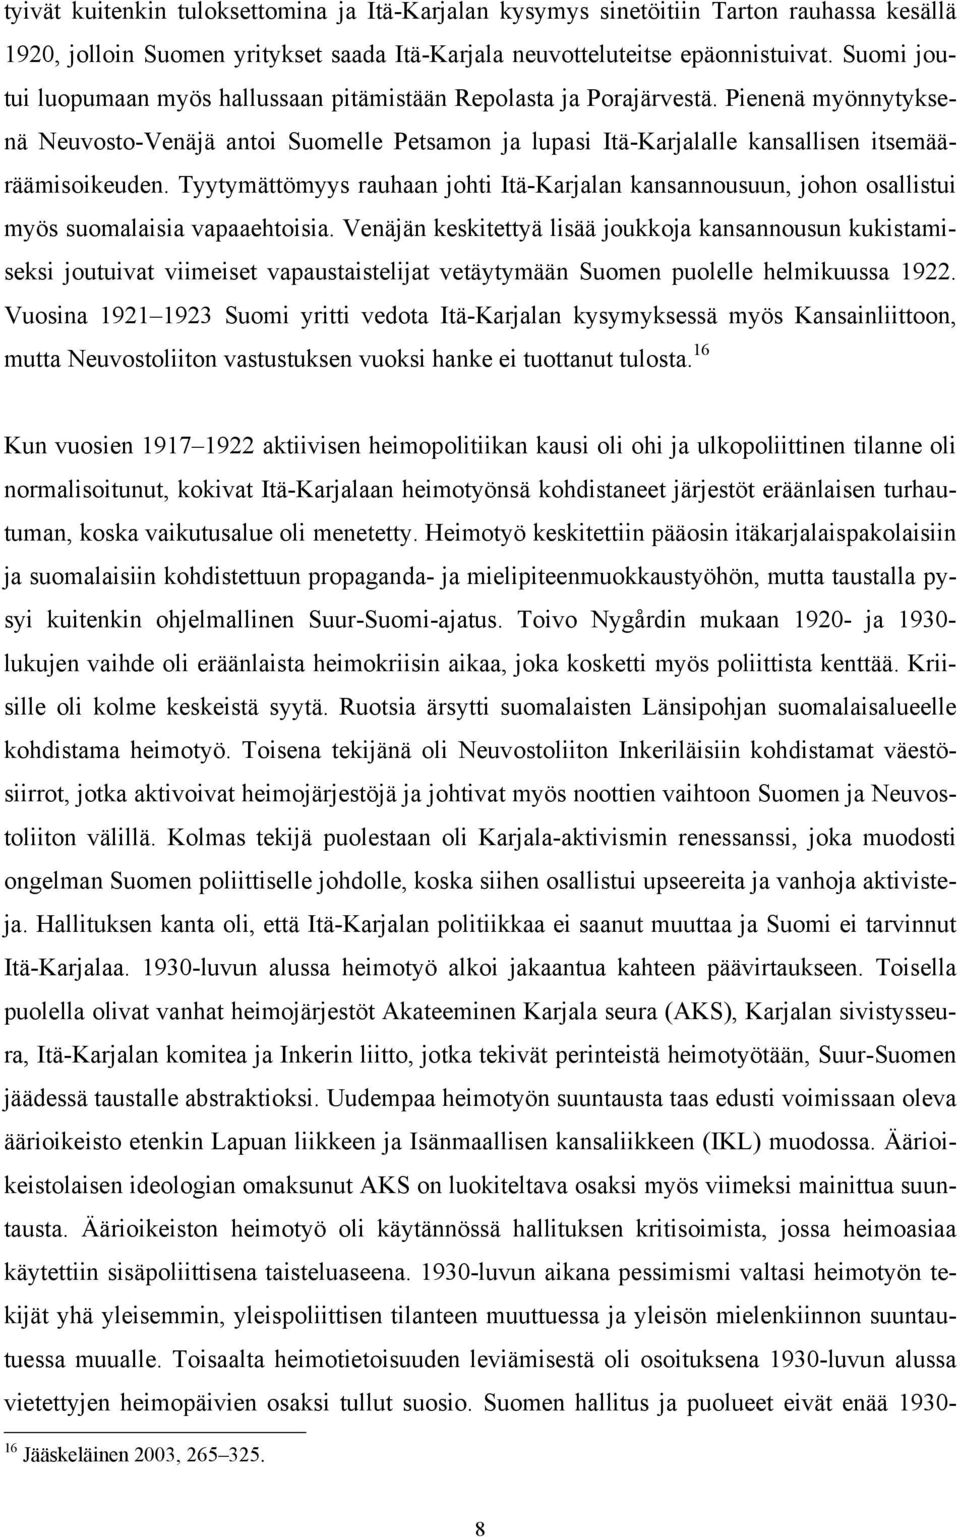 Tyytymättömyys rauhaan johti Itä-Karjalan kansannousuun, johon osallistui myös suomalaisia vapaaehtoisia.